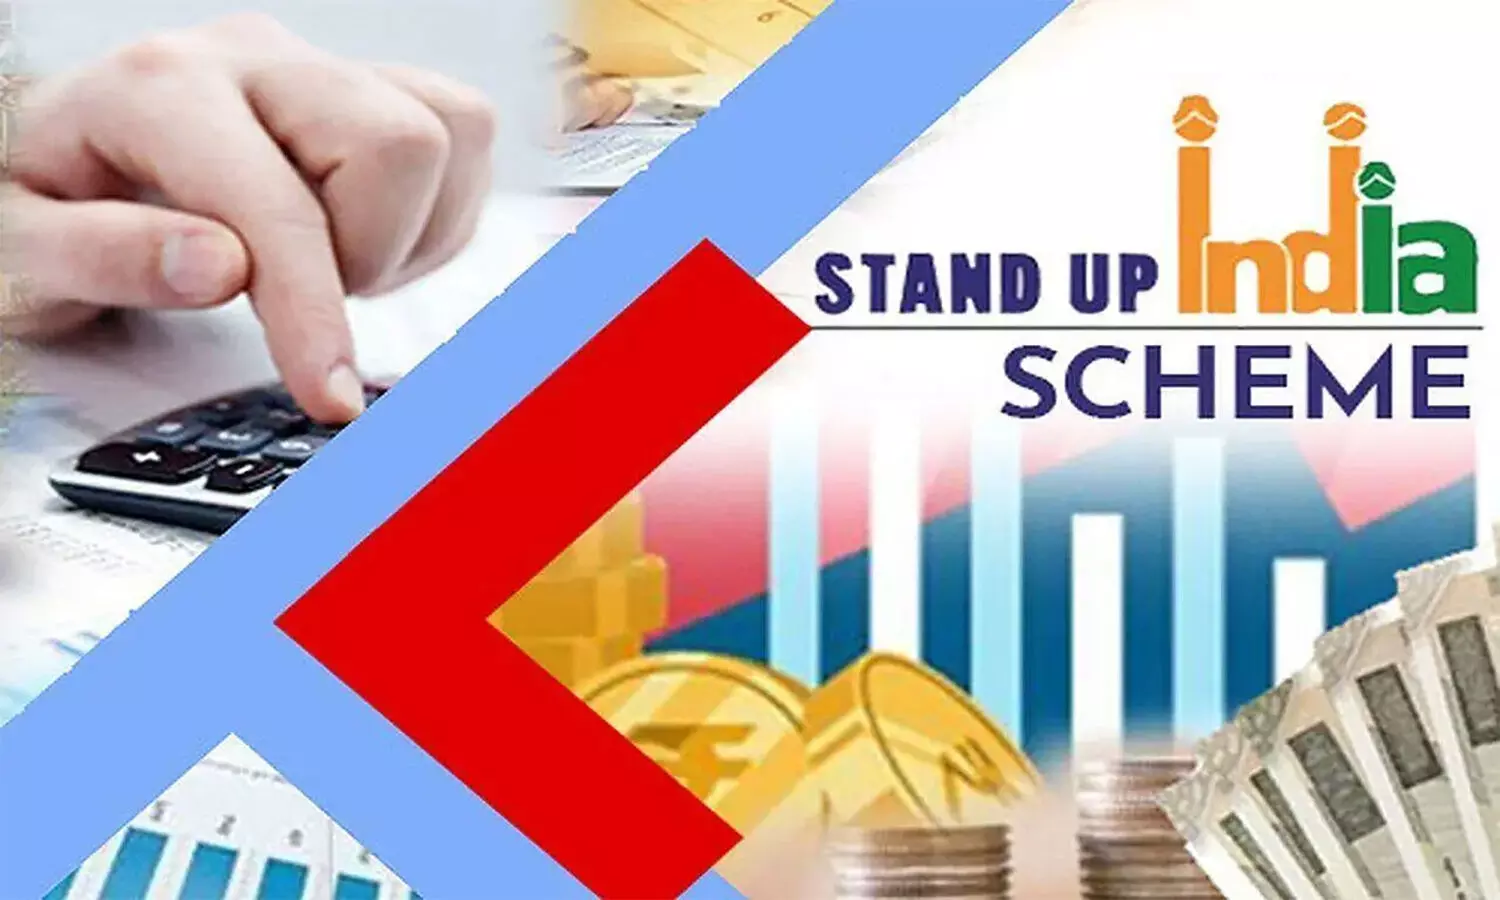 Stand-Up India Scheme: स्टैंड-अप इंडिया योजना क्या है, नियम, पात्रता सहित पूरी प्रक्रिया जान लें